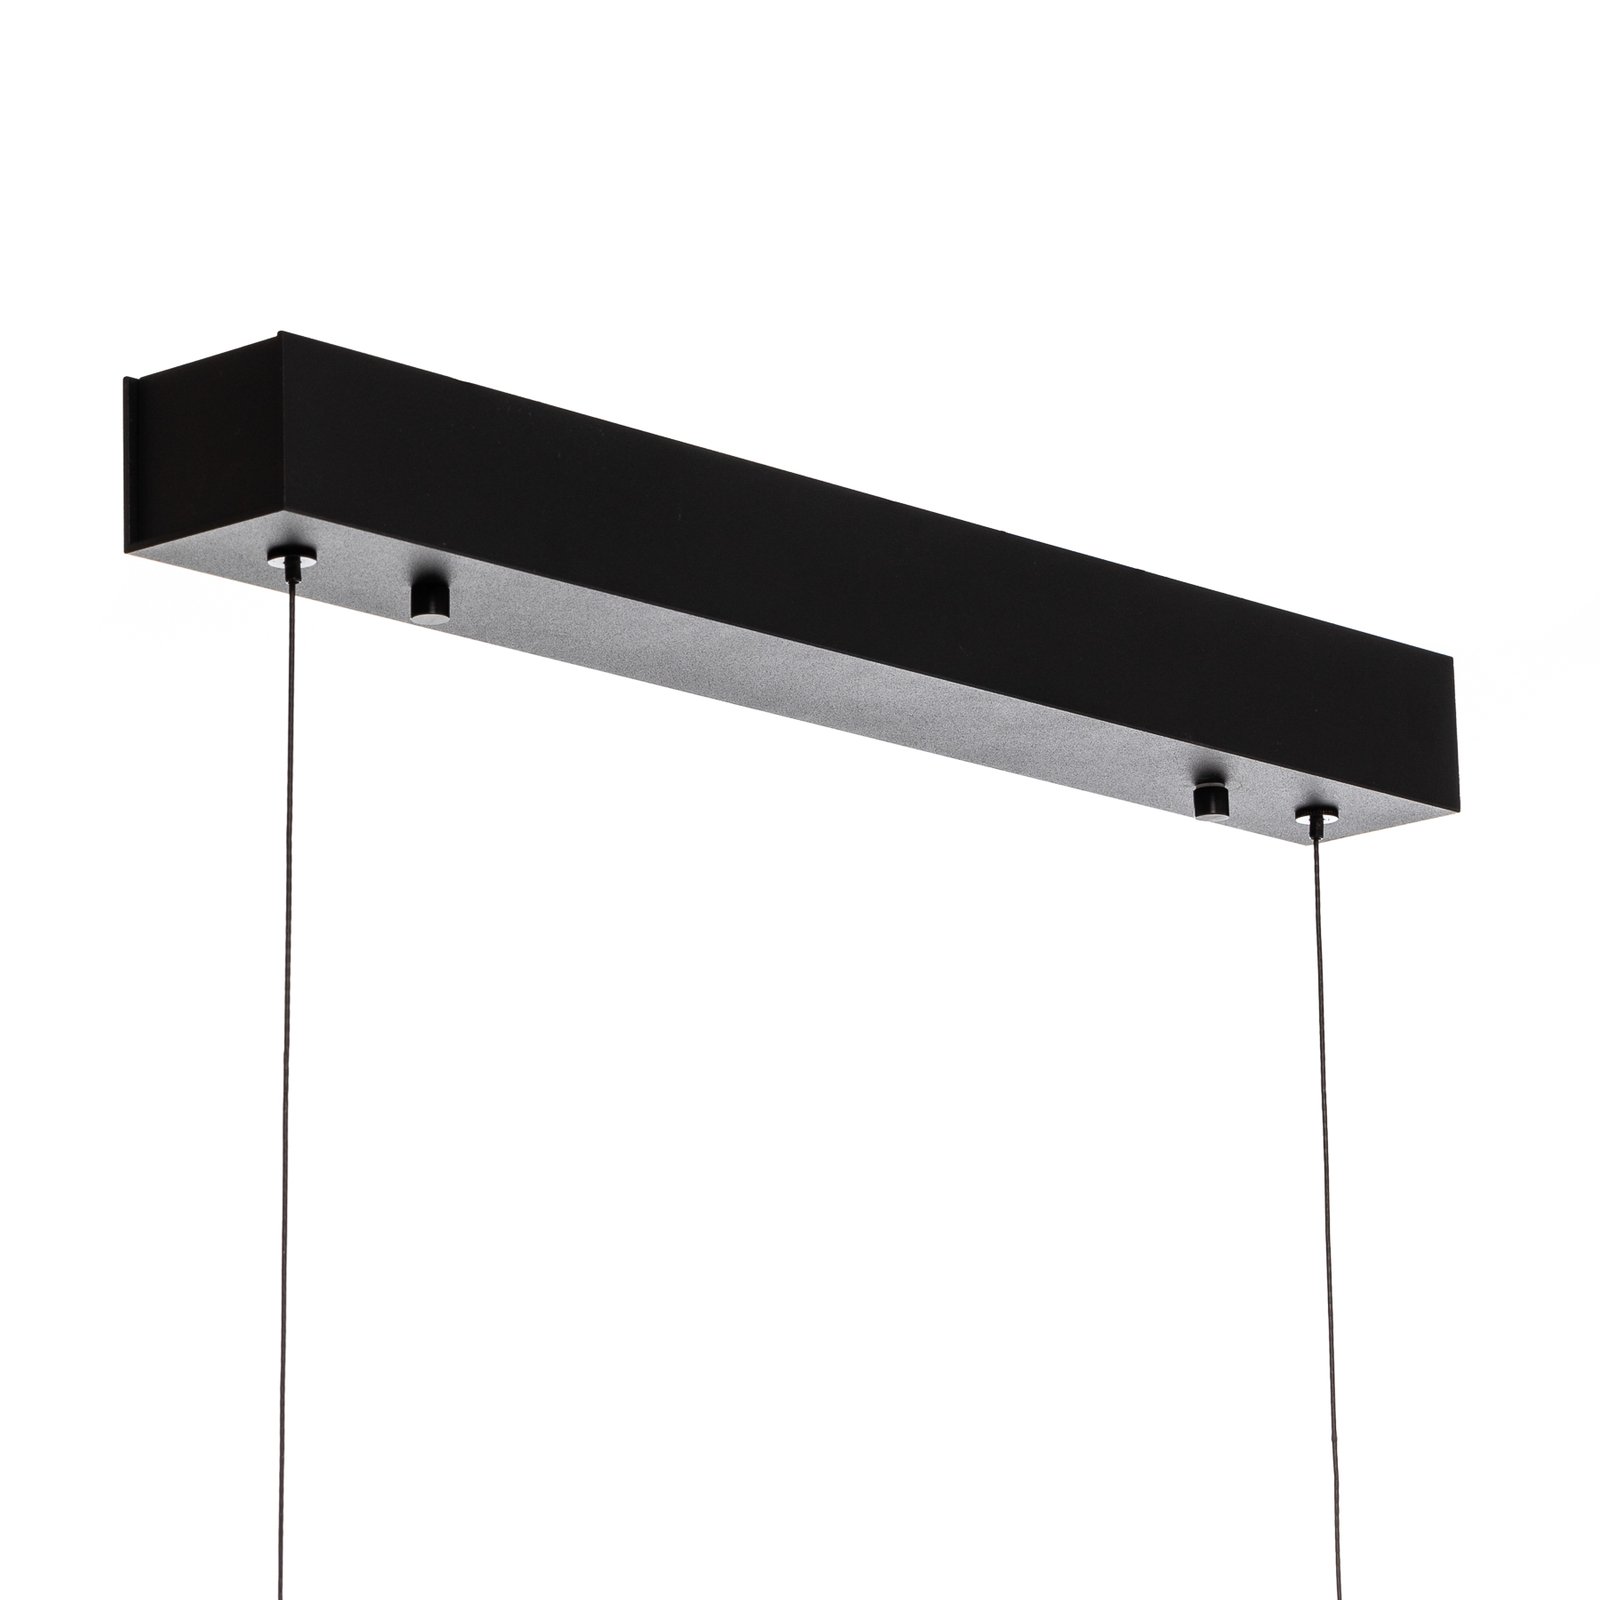 Quitani Lampa wisząca LED Kiere, dąb/czarny, 118 cm